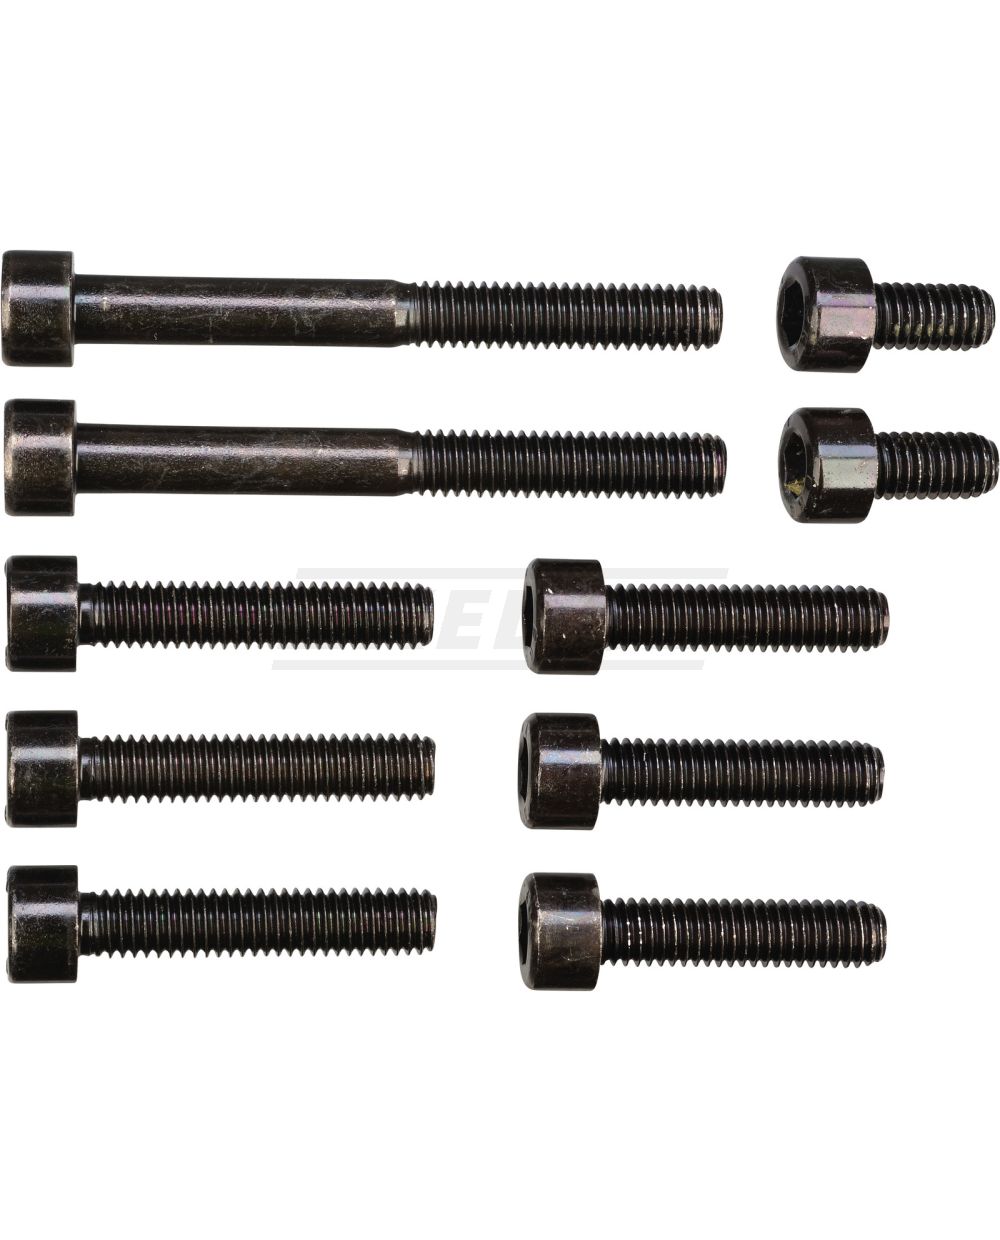 Replika-Schrauben-Set Zylinder/-kopf (schwarz verzinkt, Festigkeit 8.8, M6,  Innensechskant-Kopf)